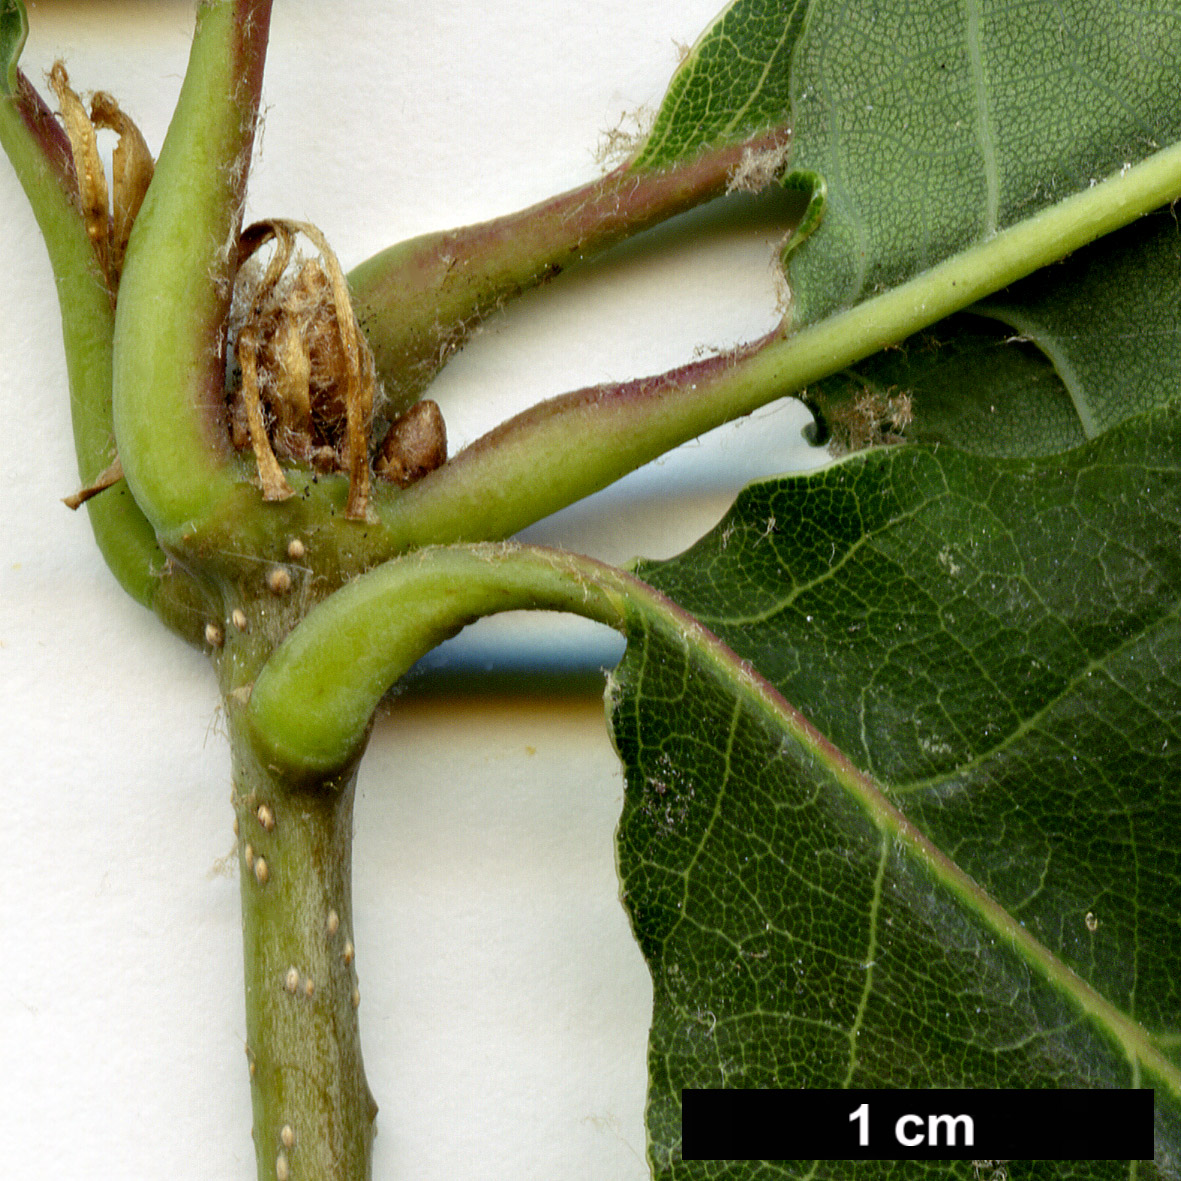 High resolution image: Family: Fagaceae - Genus: Quercus - Taxon: canariensis hybrid